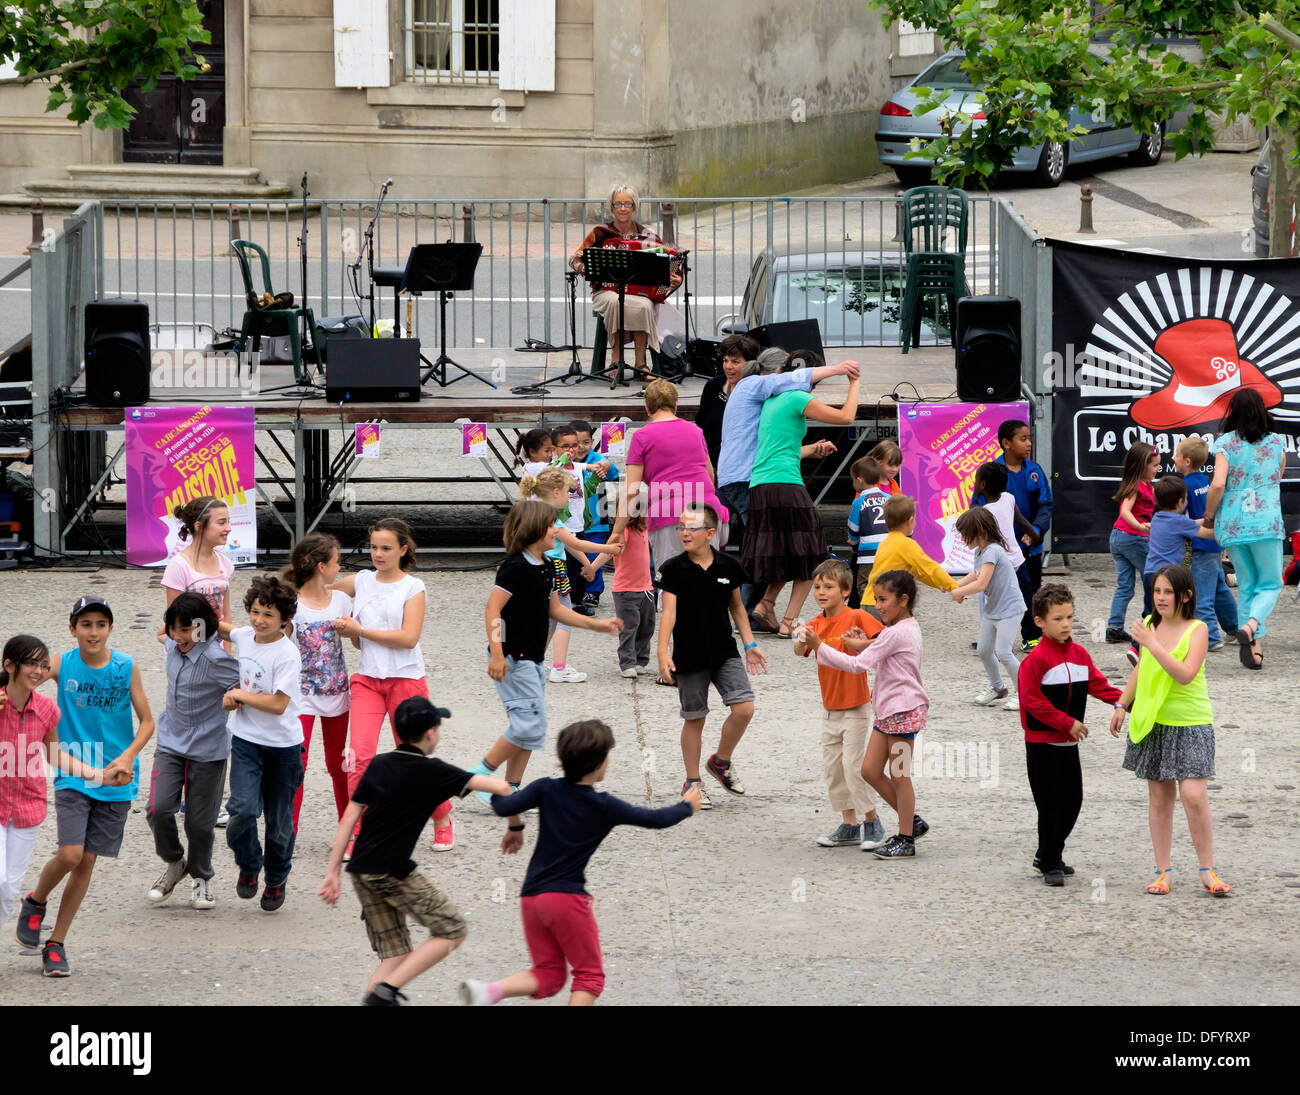 France, Carcassonne, Aude - Fete de la Musique, annual music festival,  traditional dacning for children by Le Chapeau Rouge Stock Photo - Alamy